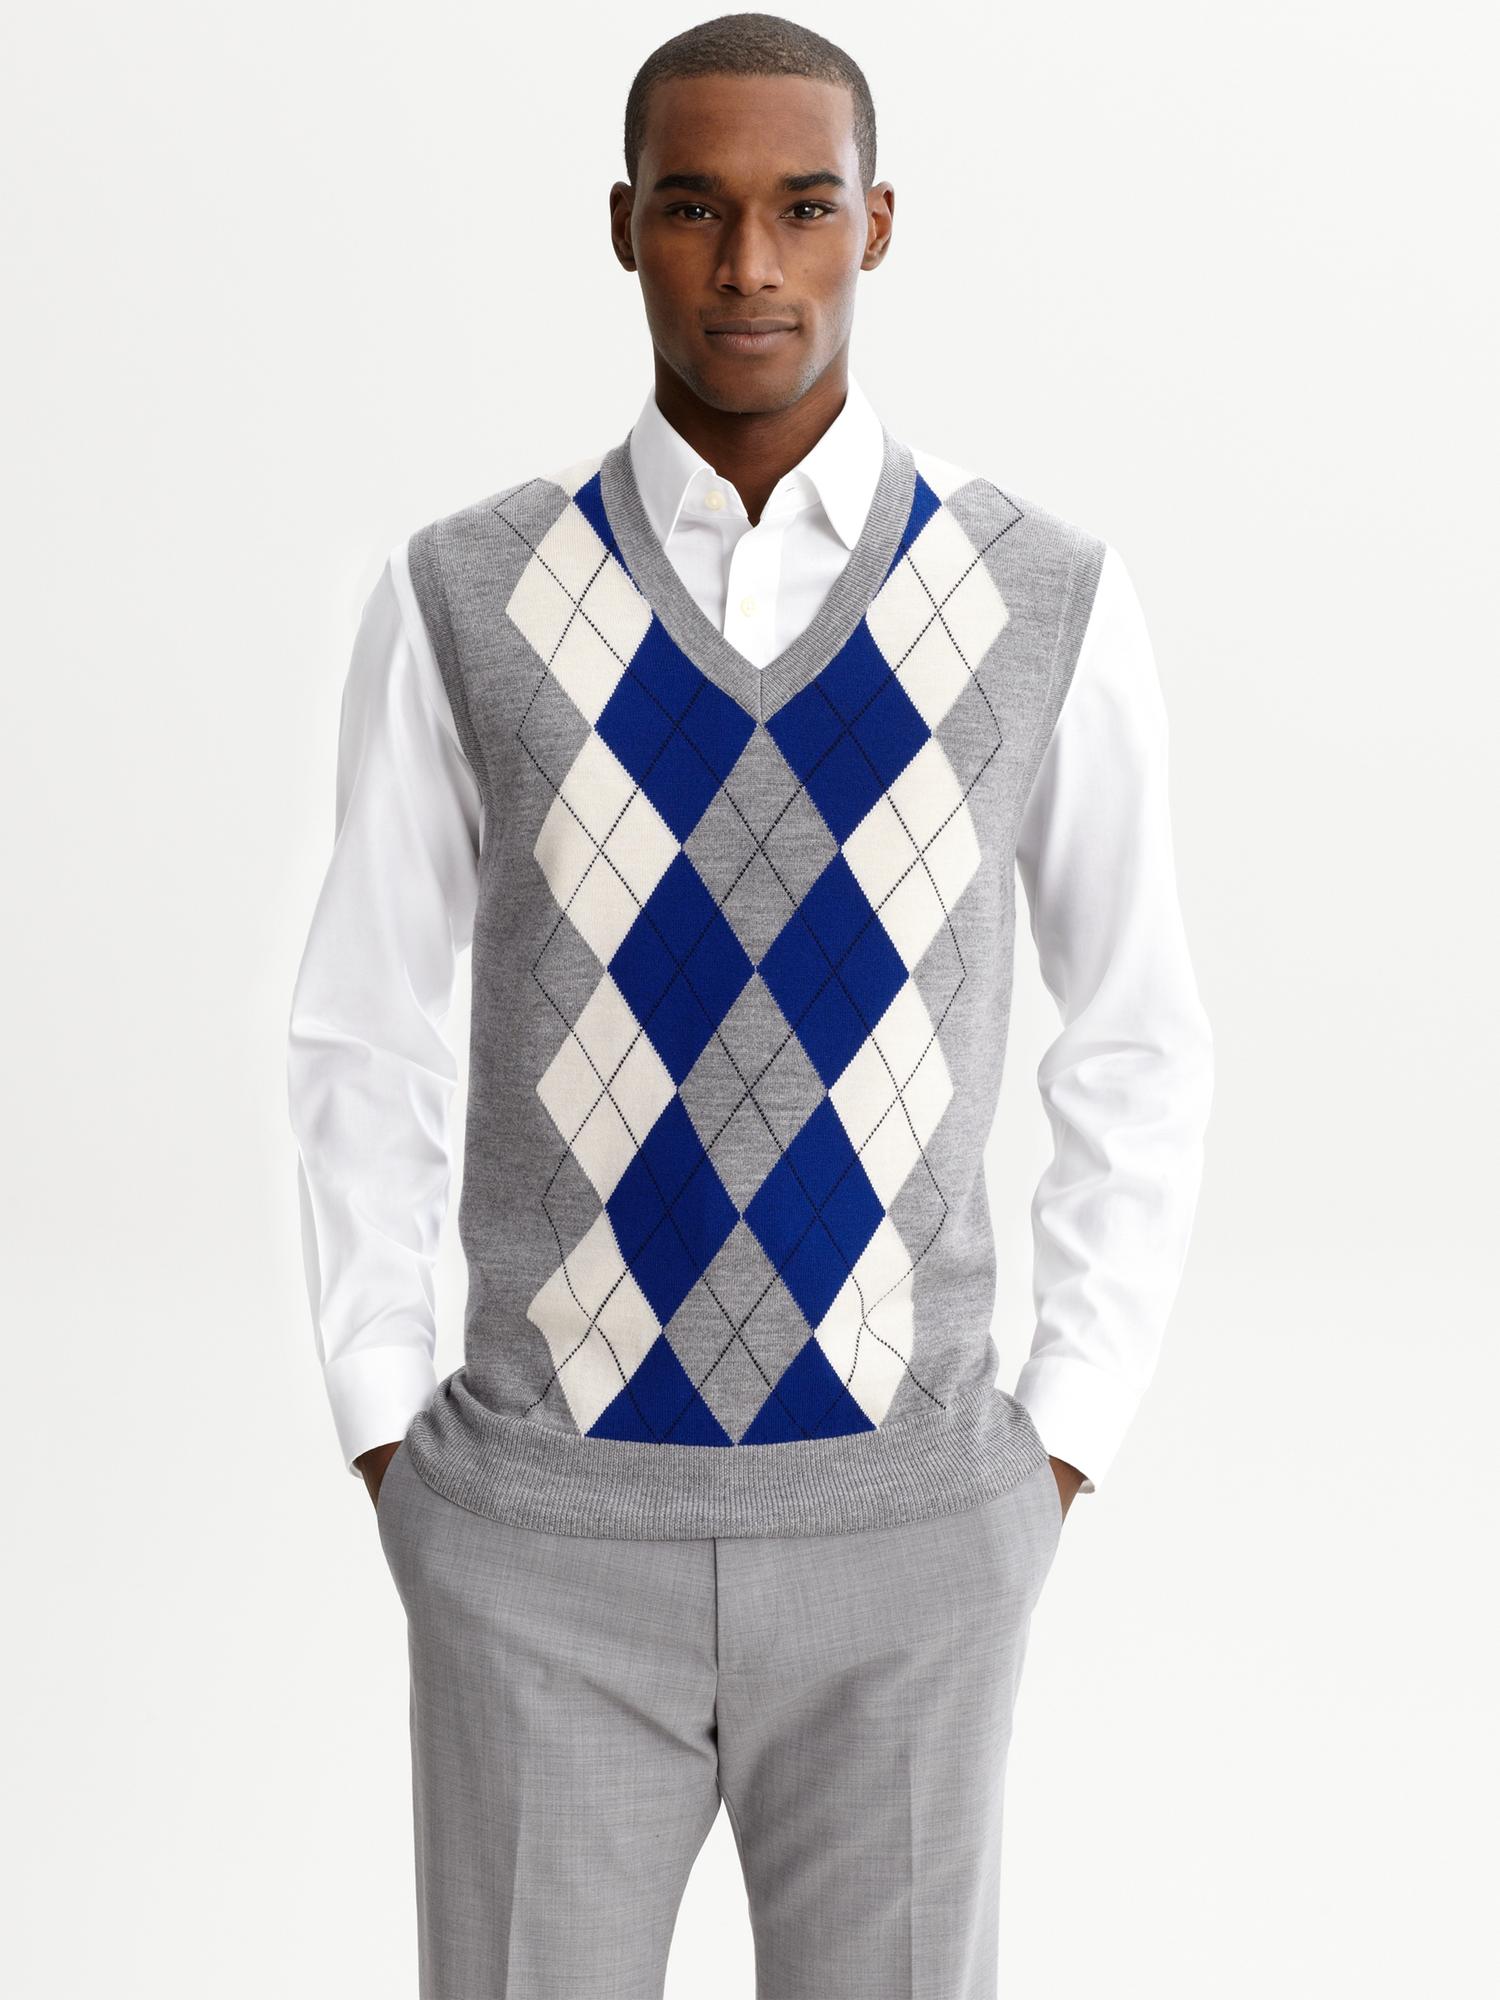 Sweater vest, Argyle sweater vest, Knitwear men